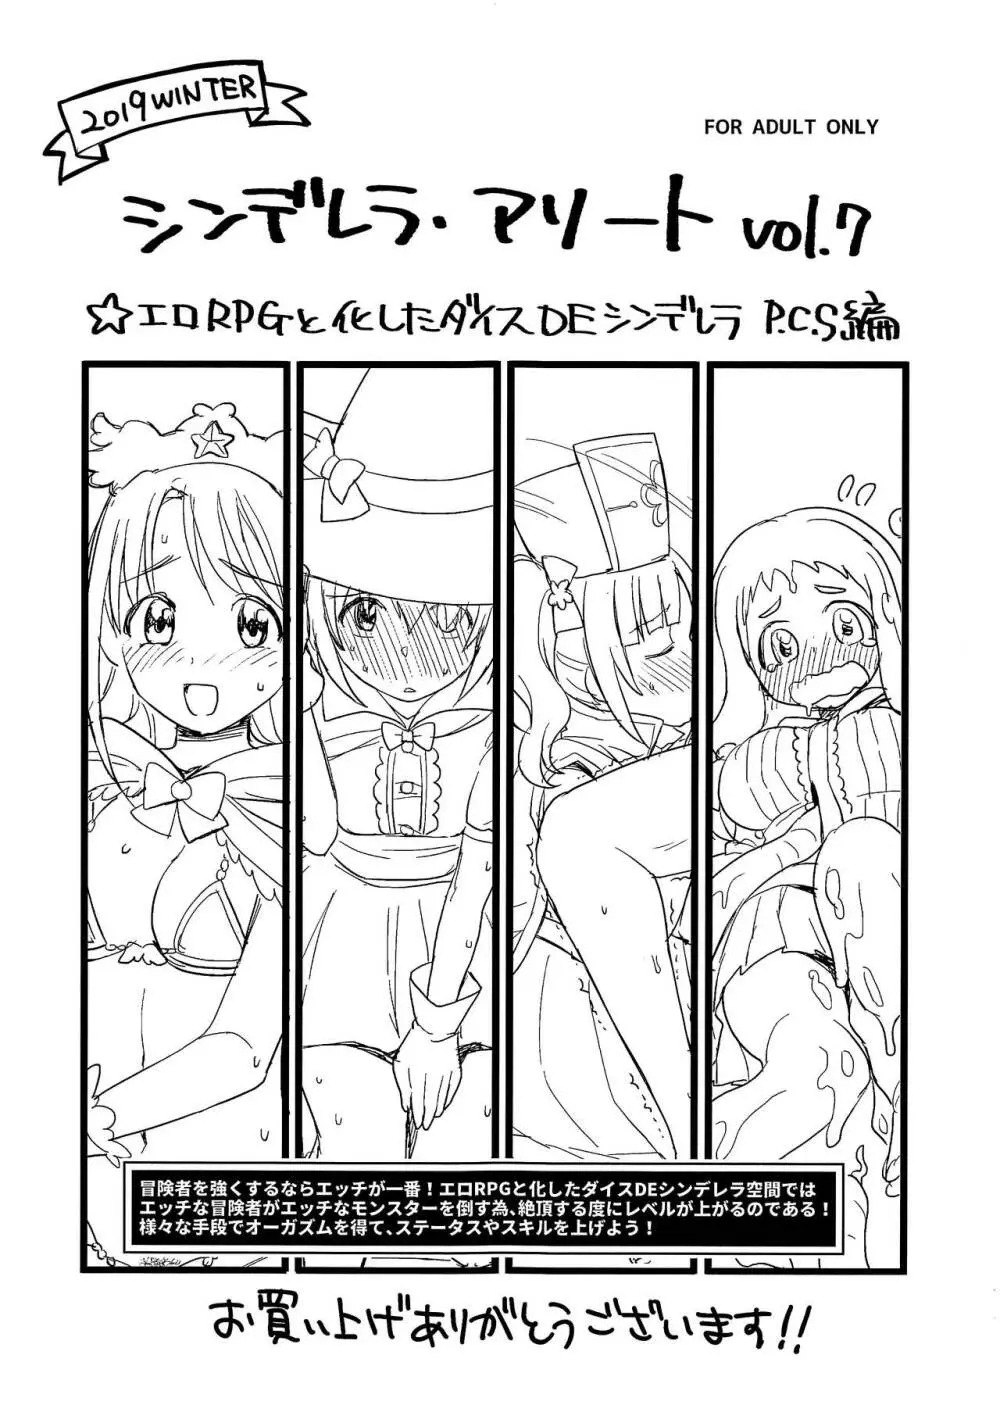 シンデレラ・アソート vol.7 ☆エロRPGと化したダイスDEシンデレラ P.C.S編 - page1